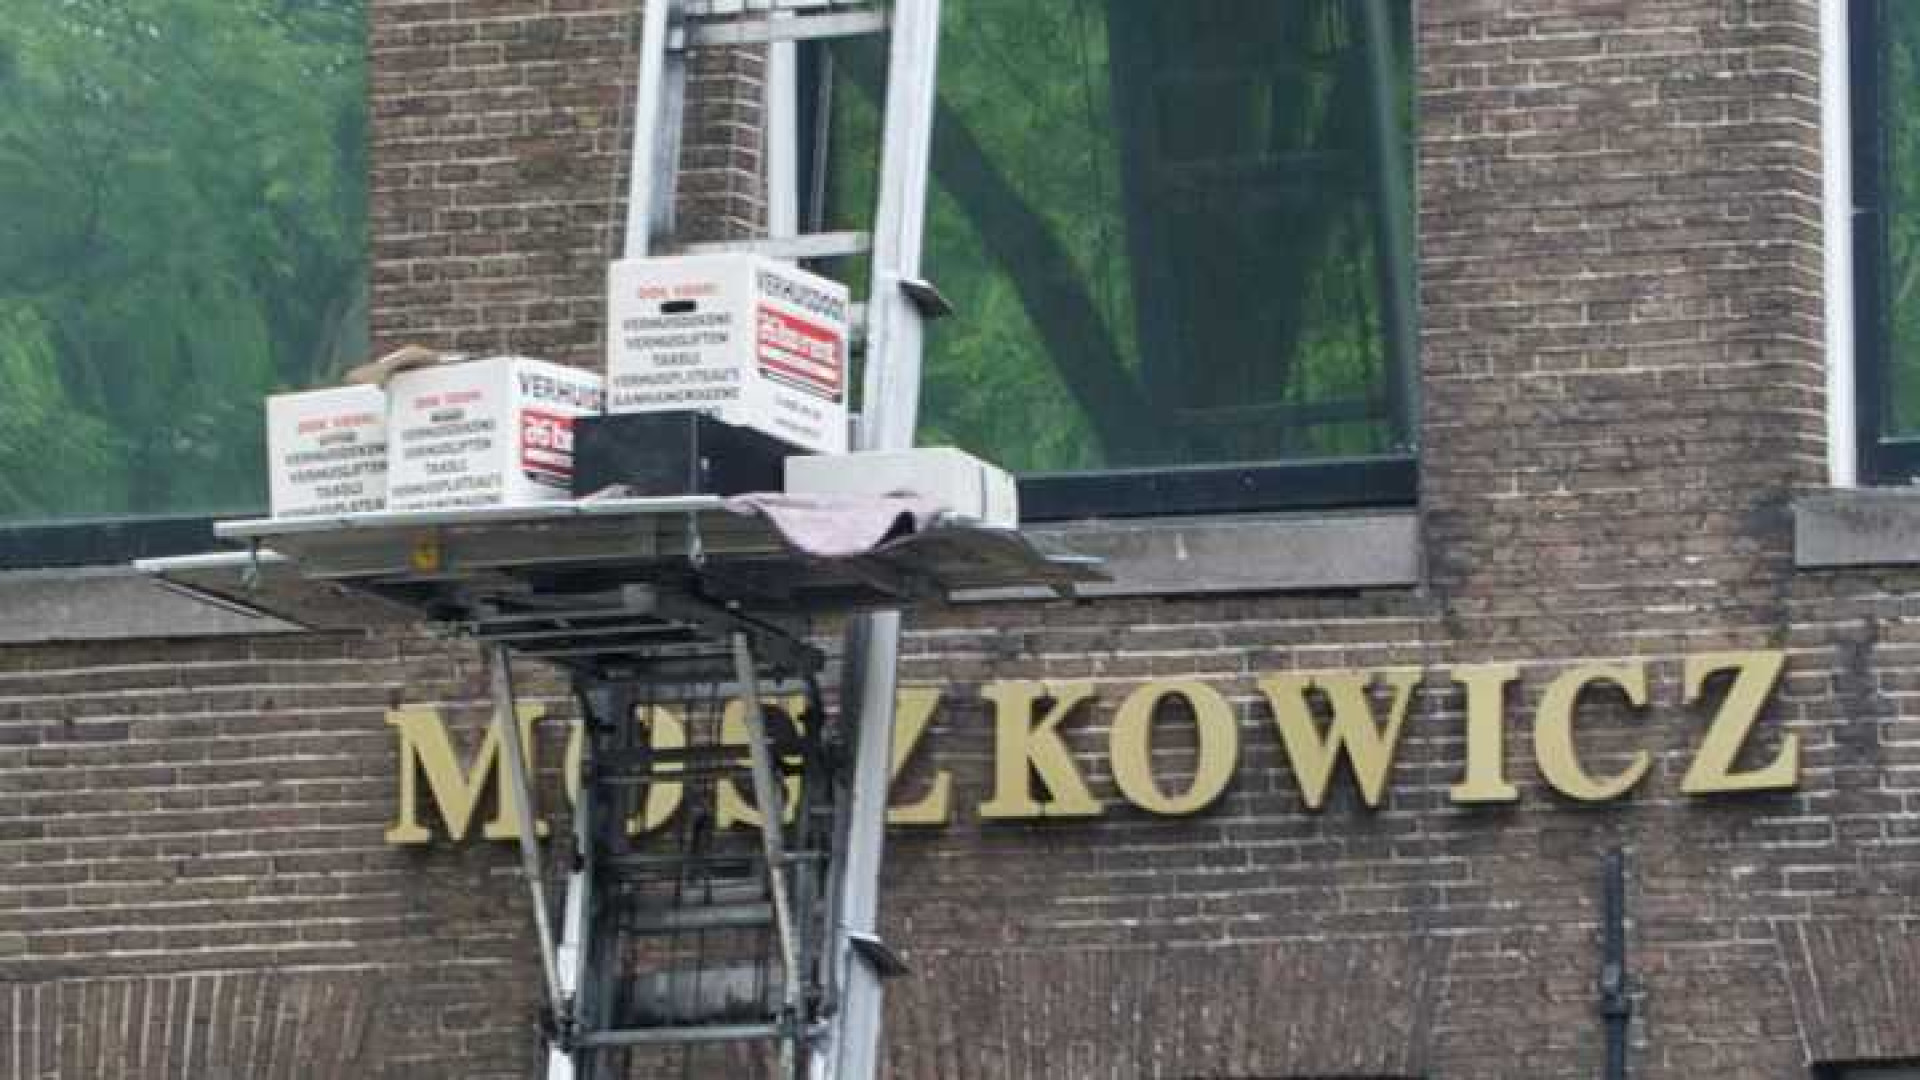 Bram Moszkowicz verkoopt zijn pand en verhuist. Zie exclusieve foto's